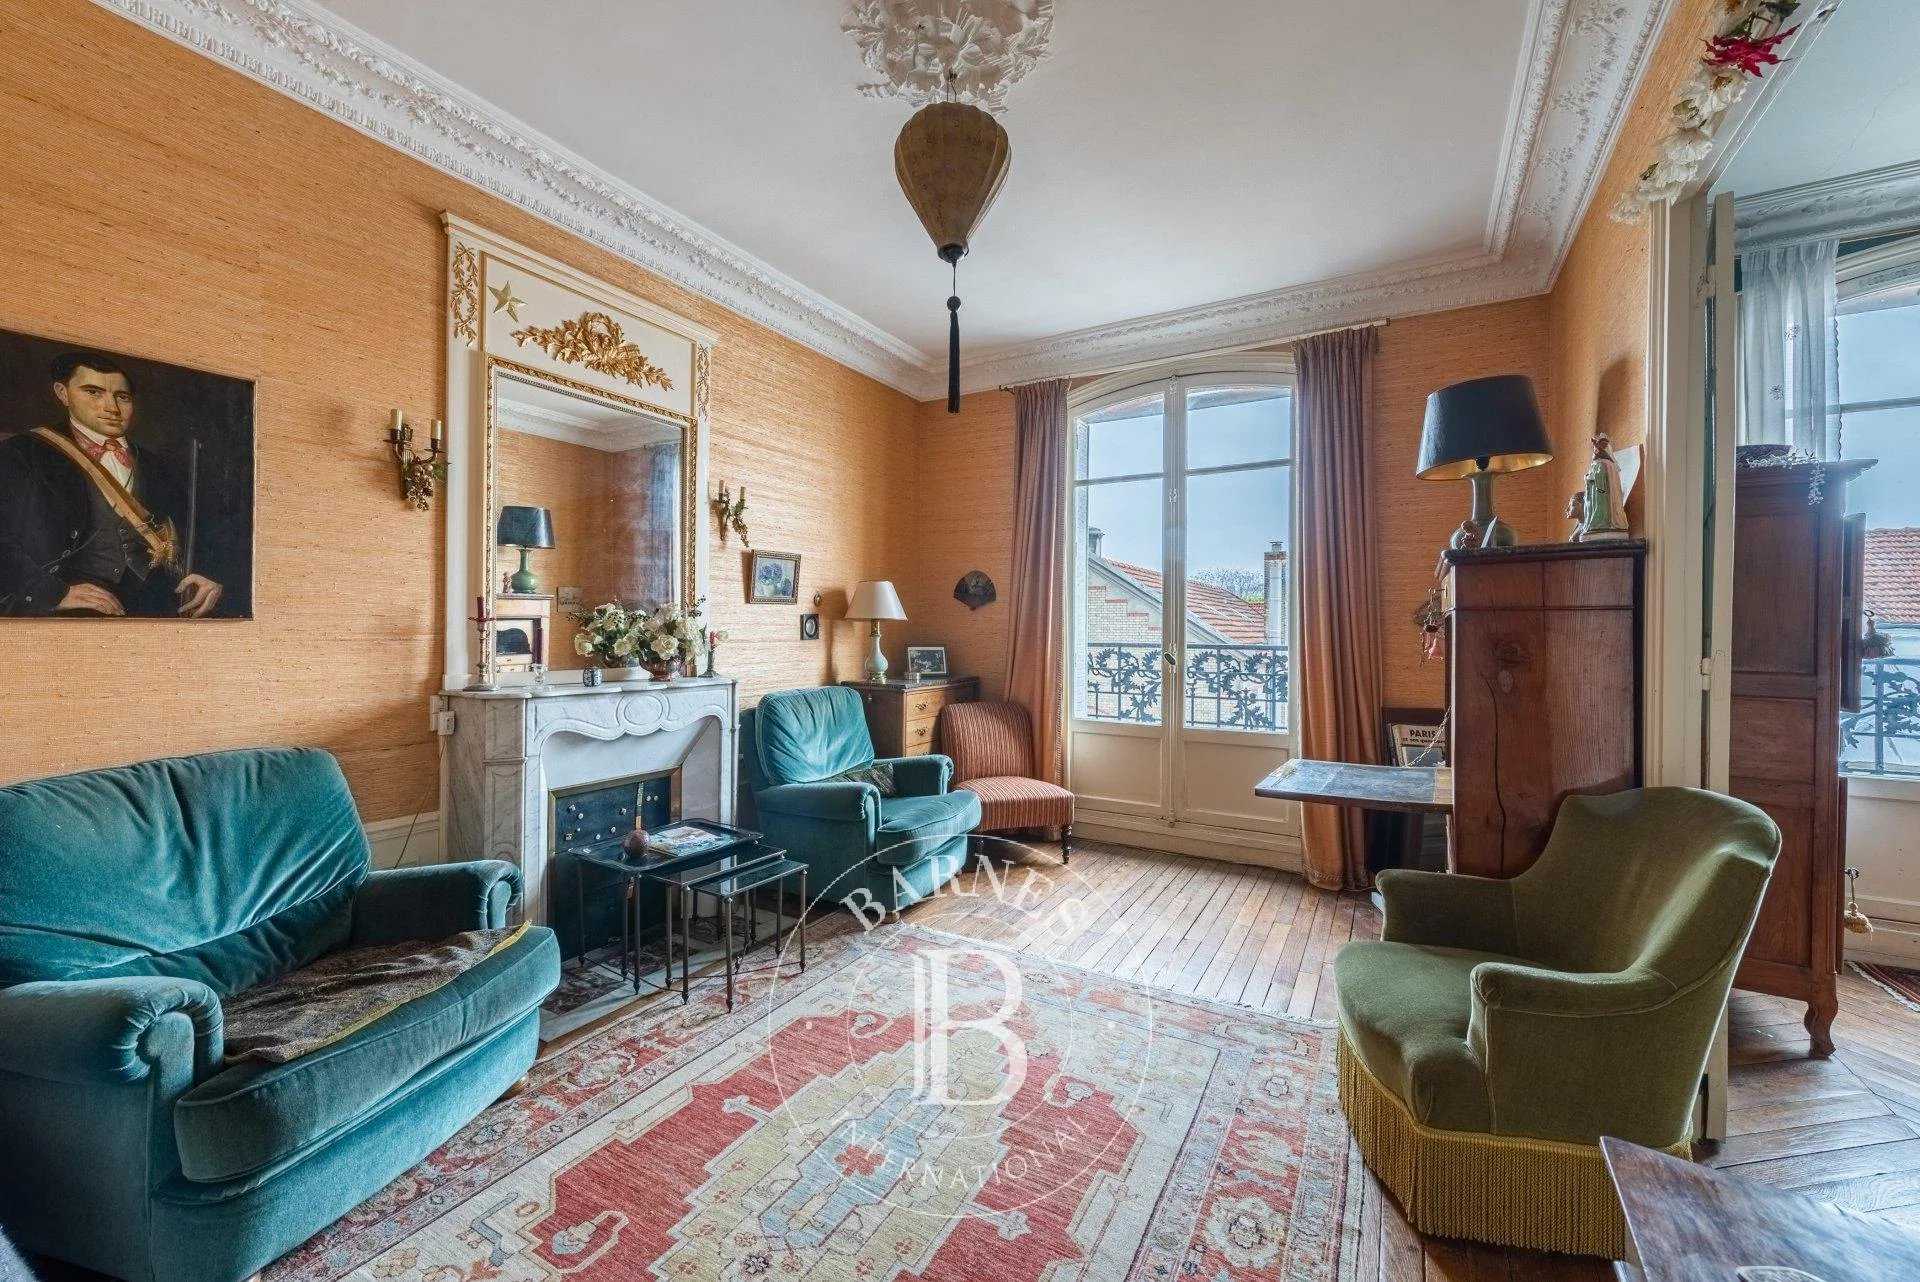 Boulogne-Billancourt  - Appartement 4 Pièces 2 Chambres